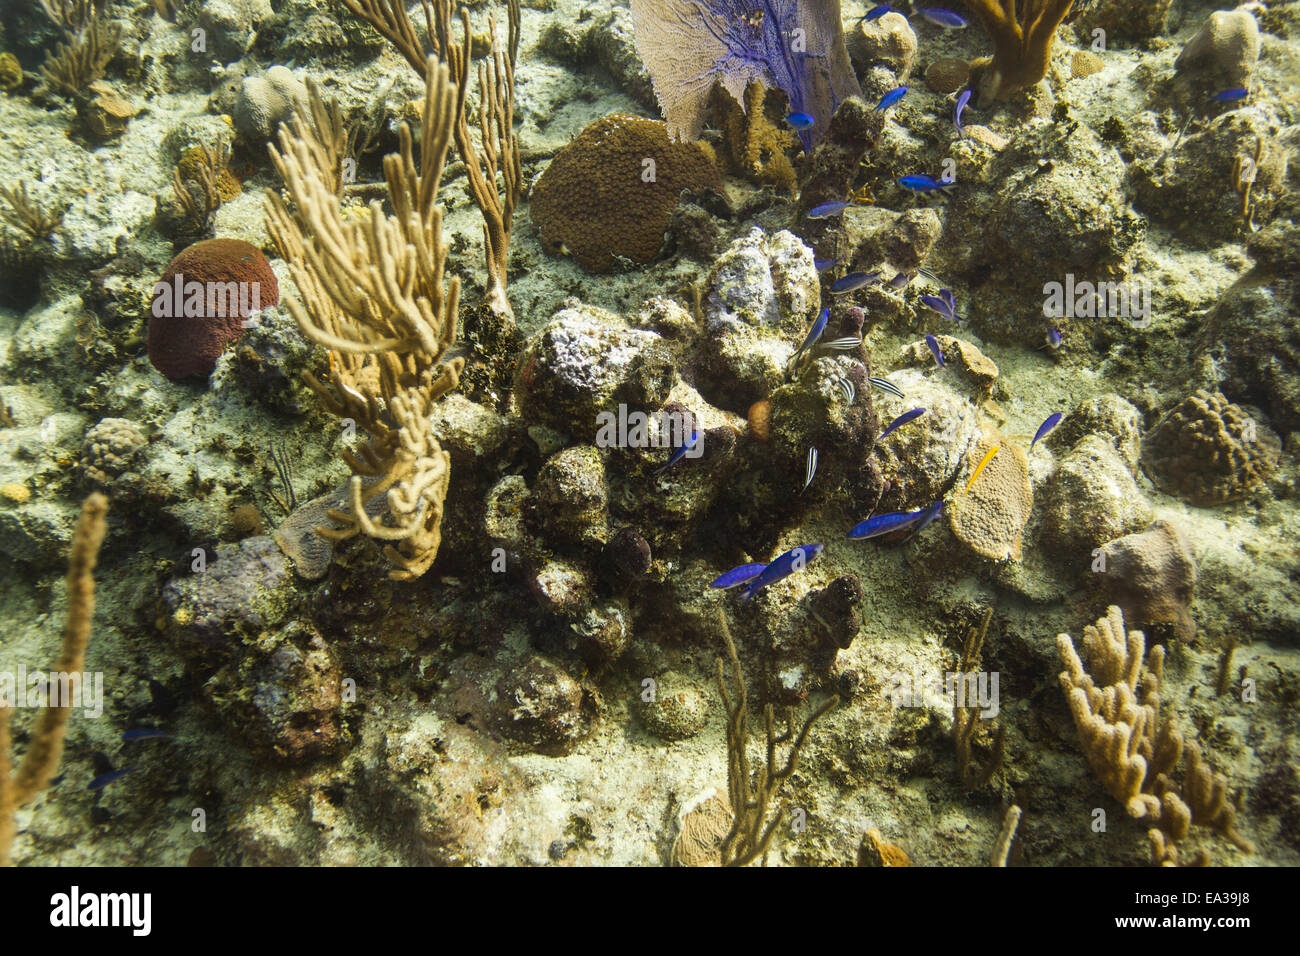 Reef life Stock Photo